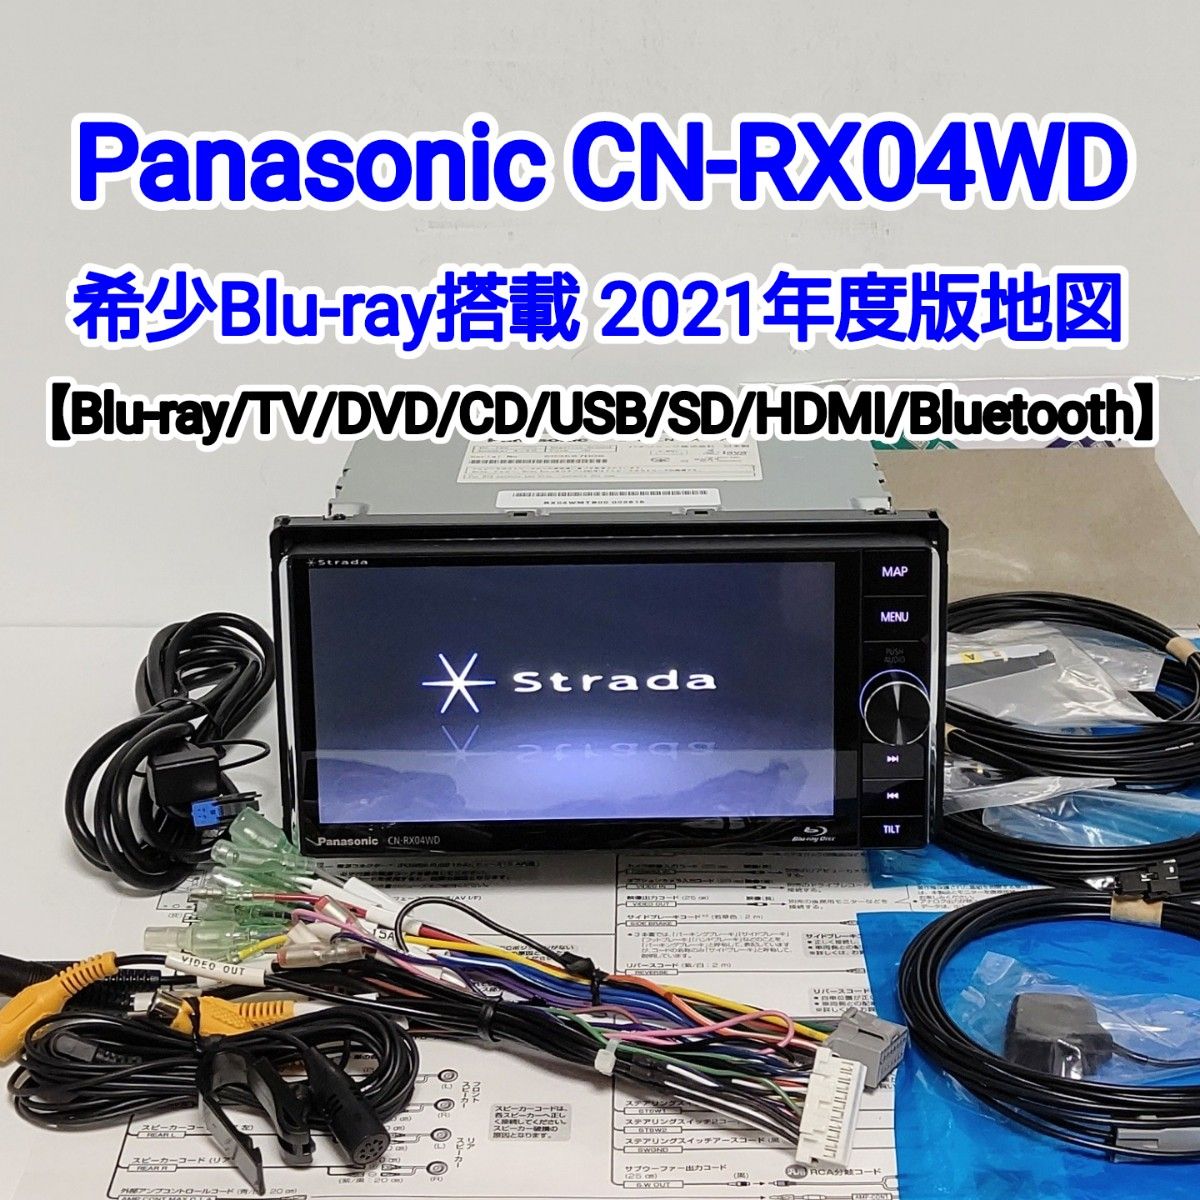 歳末限定!美品 Panasonic CN-RX04WD 希少人気のBlu-ray搭載モデル/HDMI ...